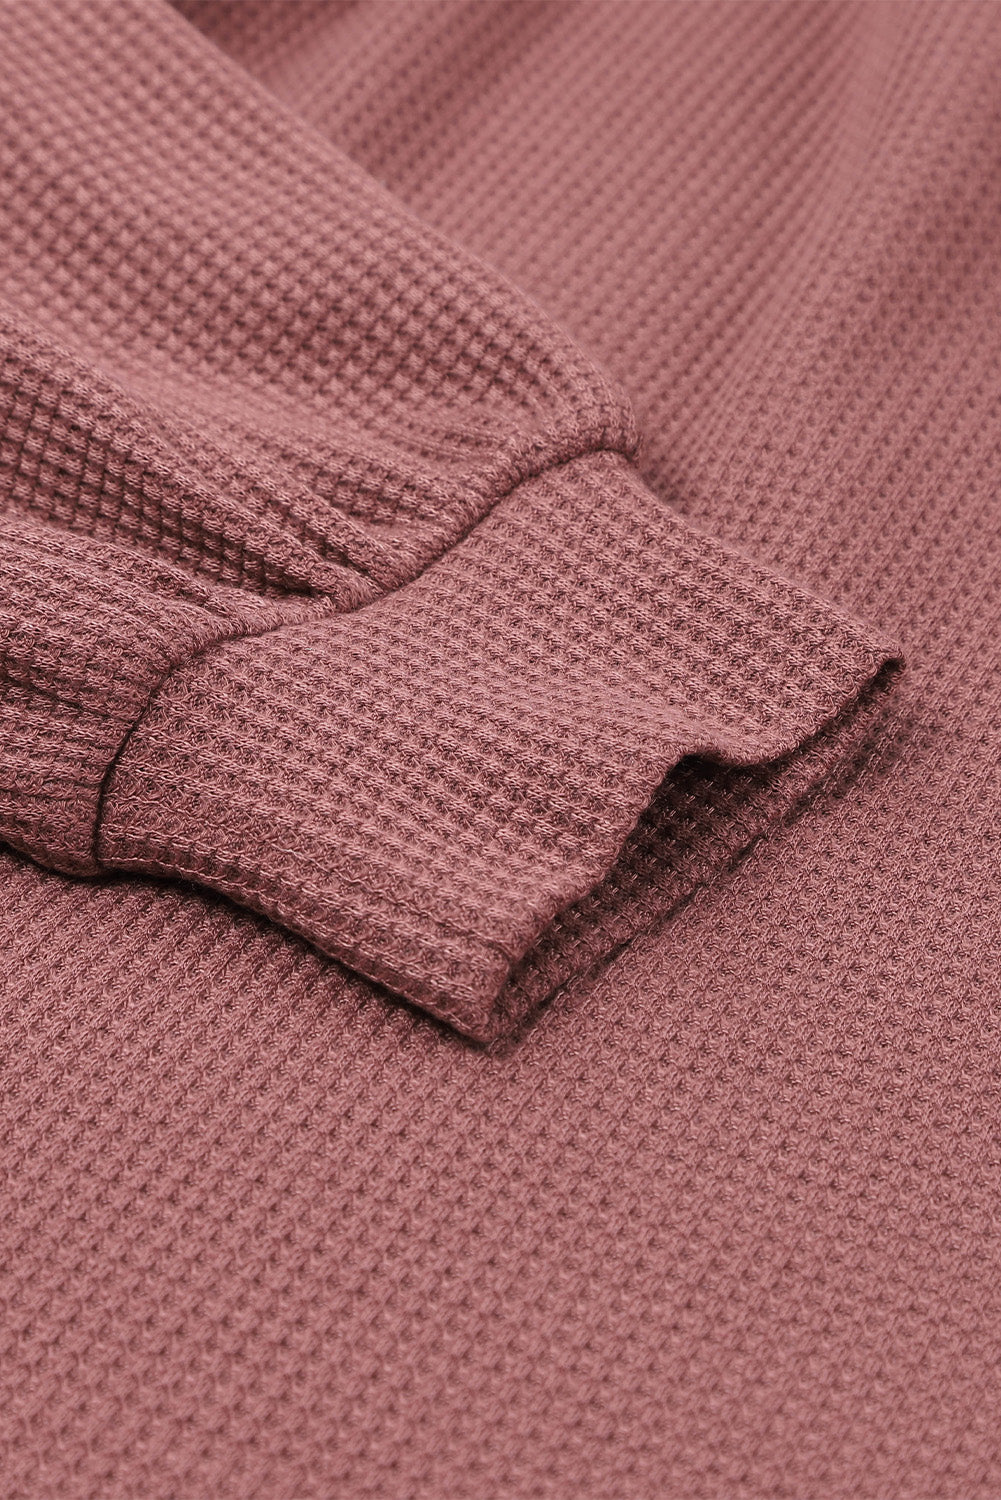 Crna pletena majica s puf rukavima i širokim izrezom